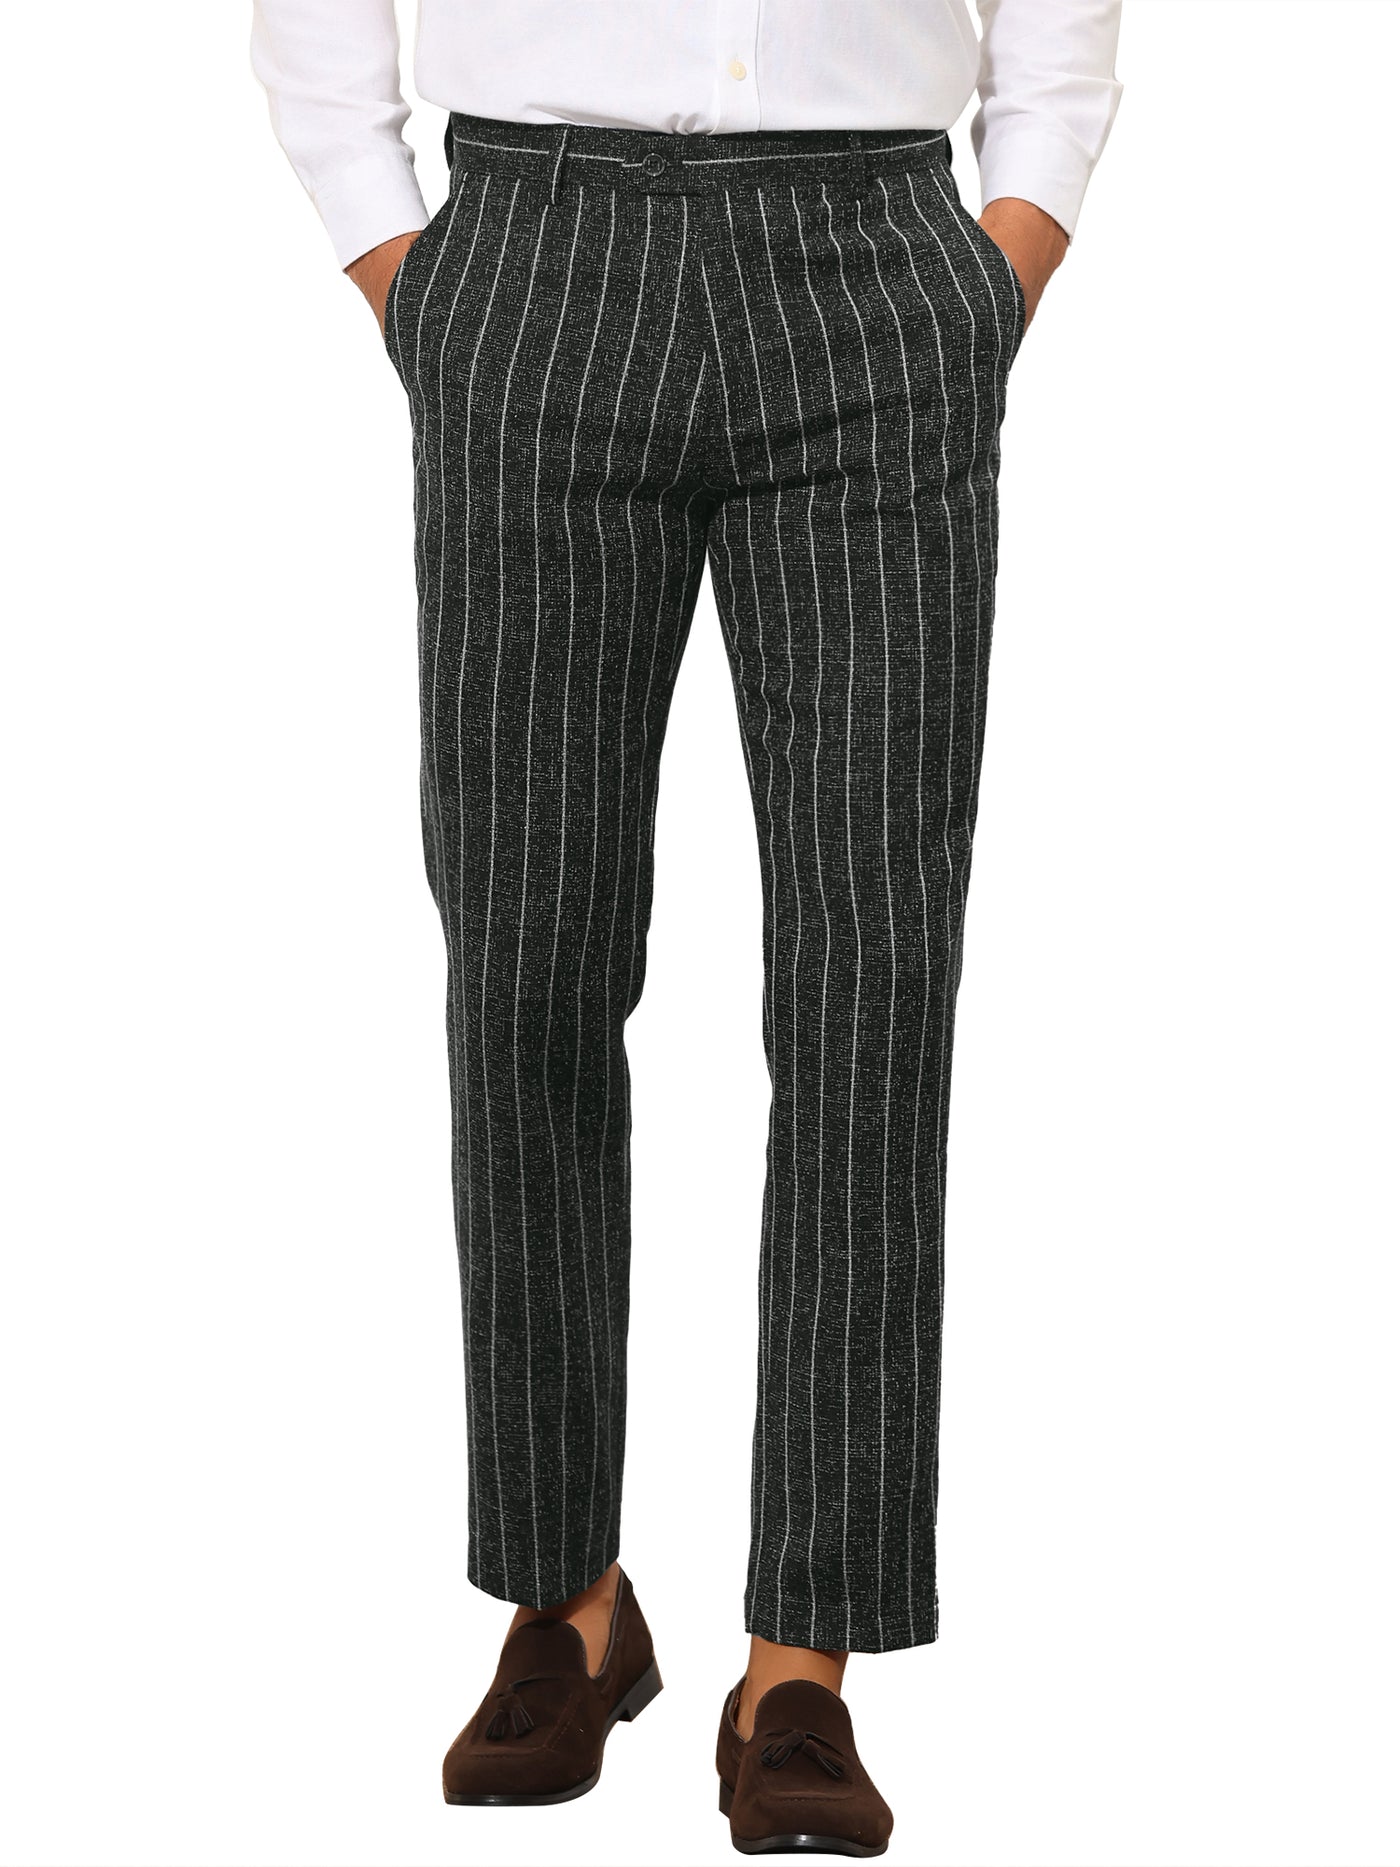 Bublédon Men's Business Striped Flat Front Slim Fit Formal Suit Dress Pants